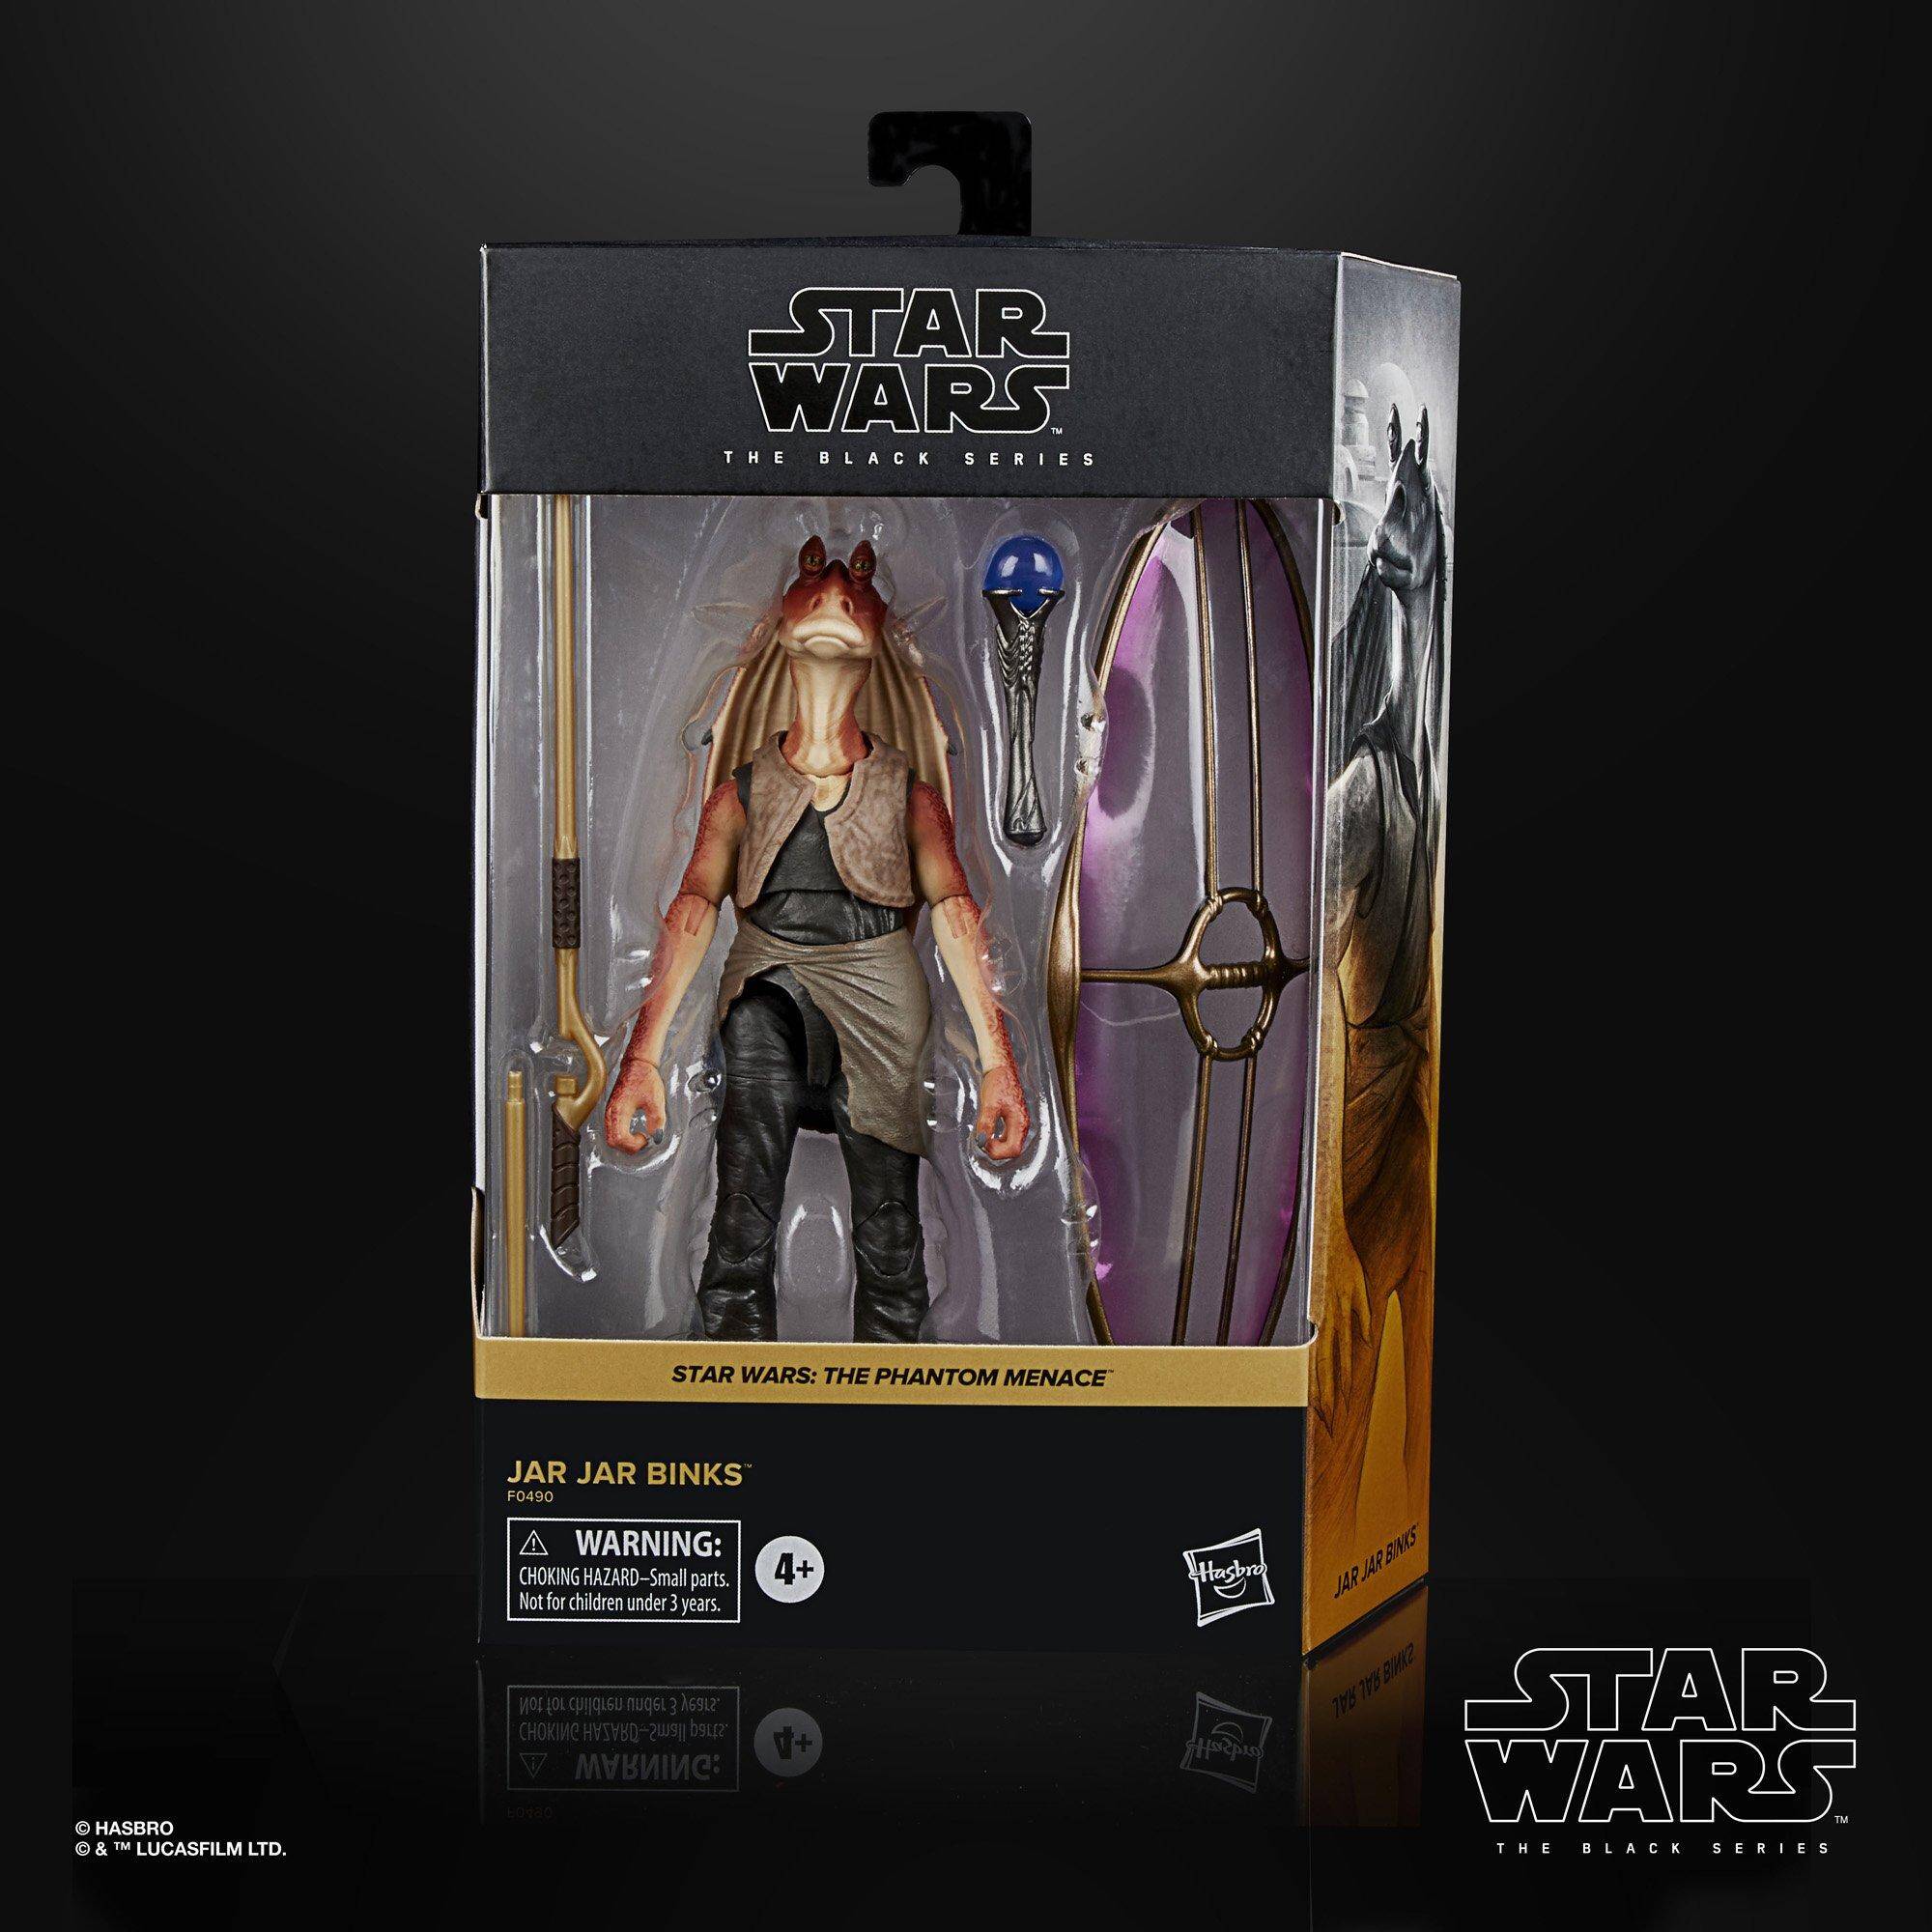 Star Wars The Black Series Jar Jar Binks Deluxe Figure – ToyFigz.com